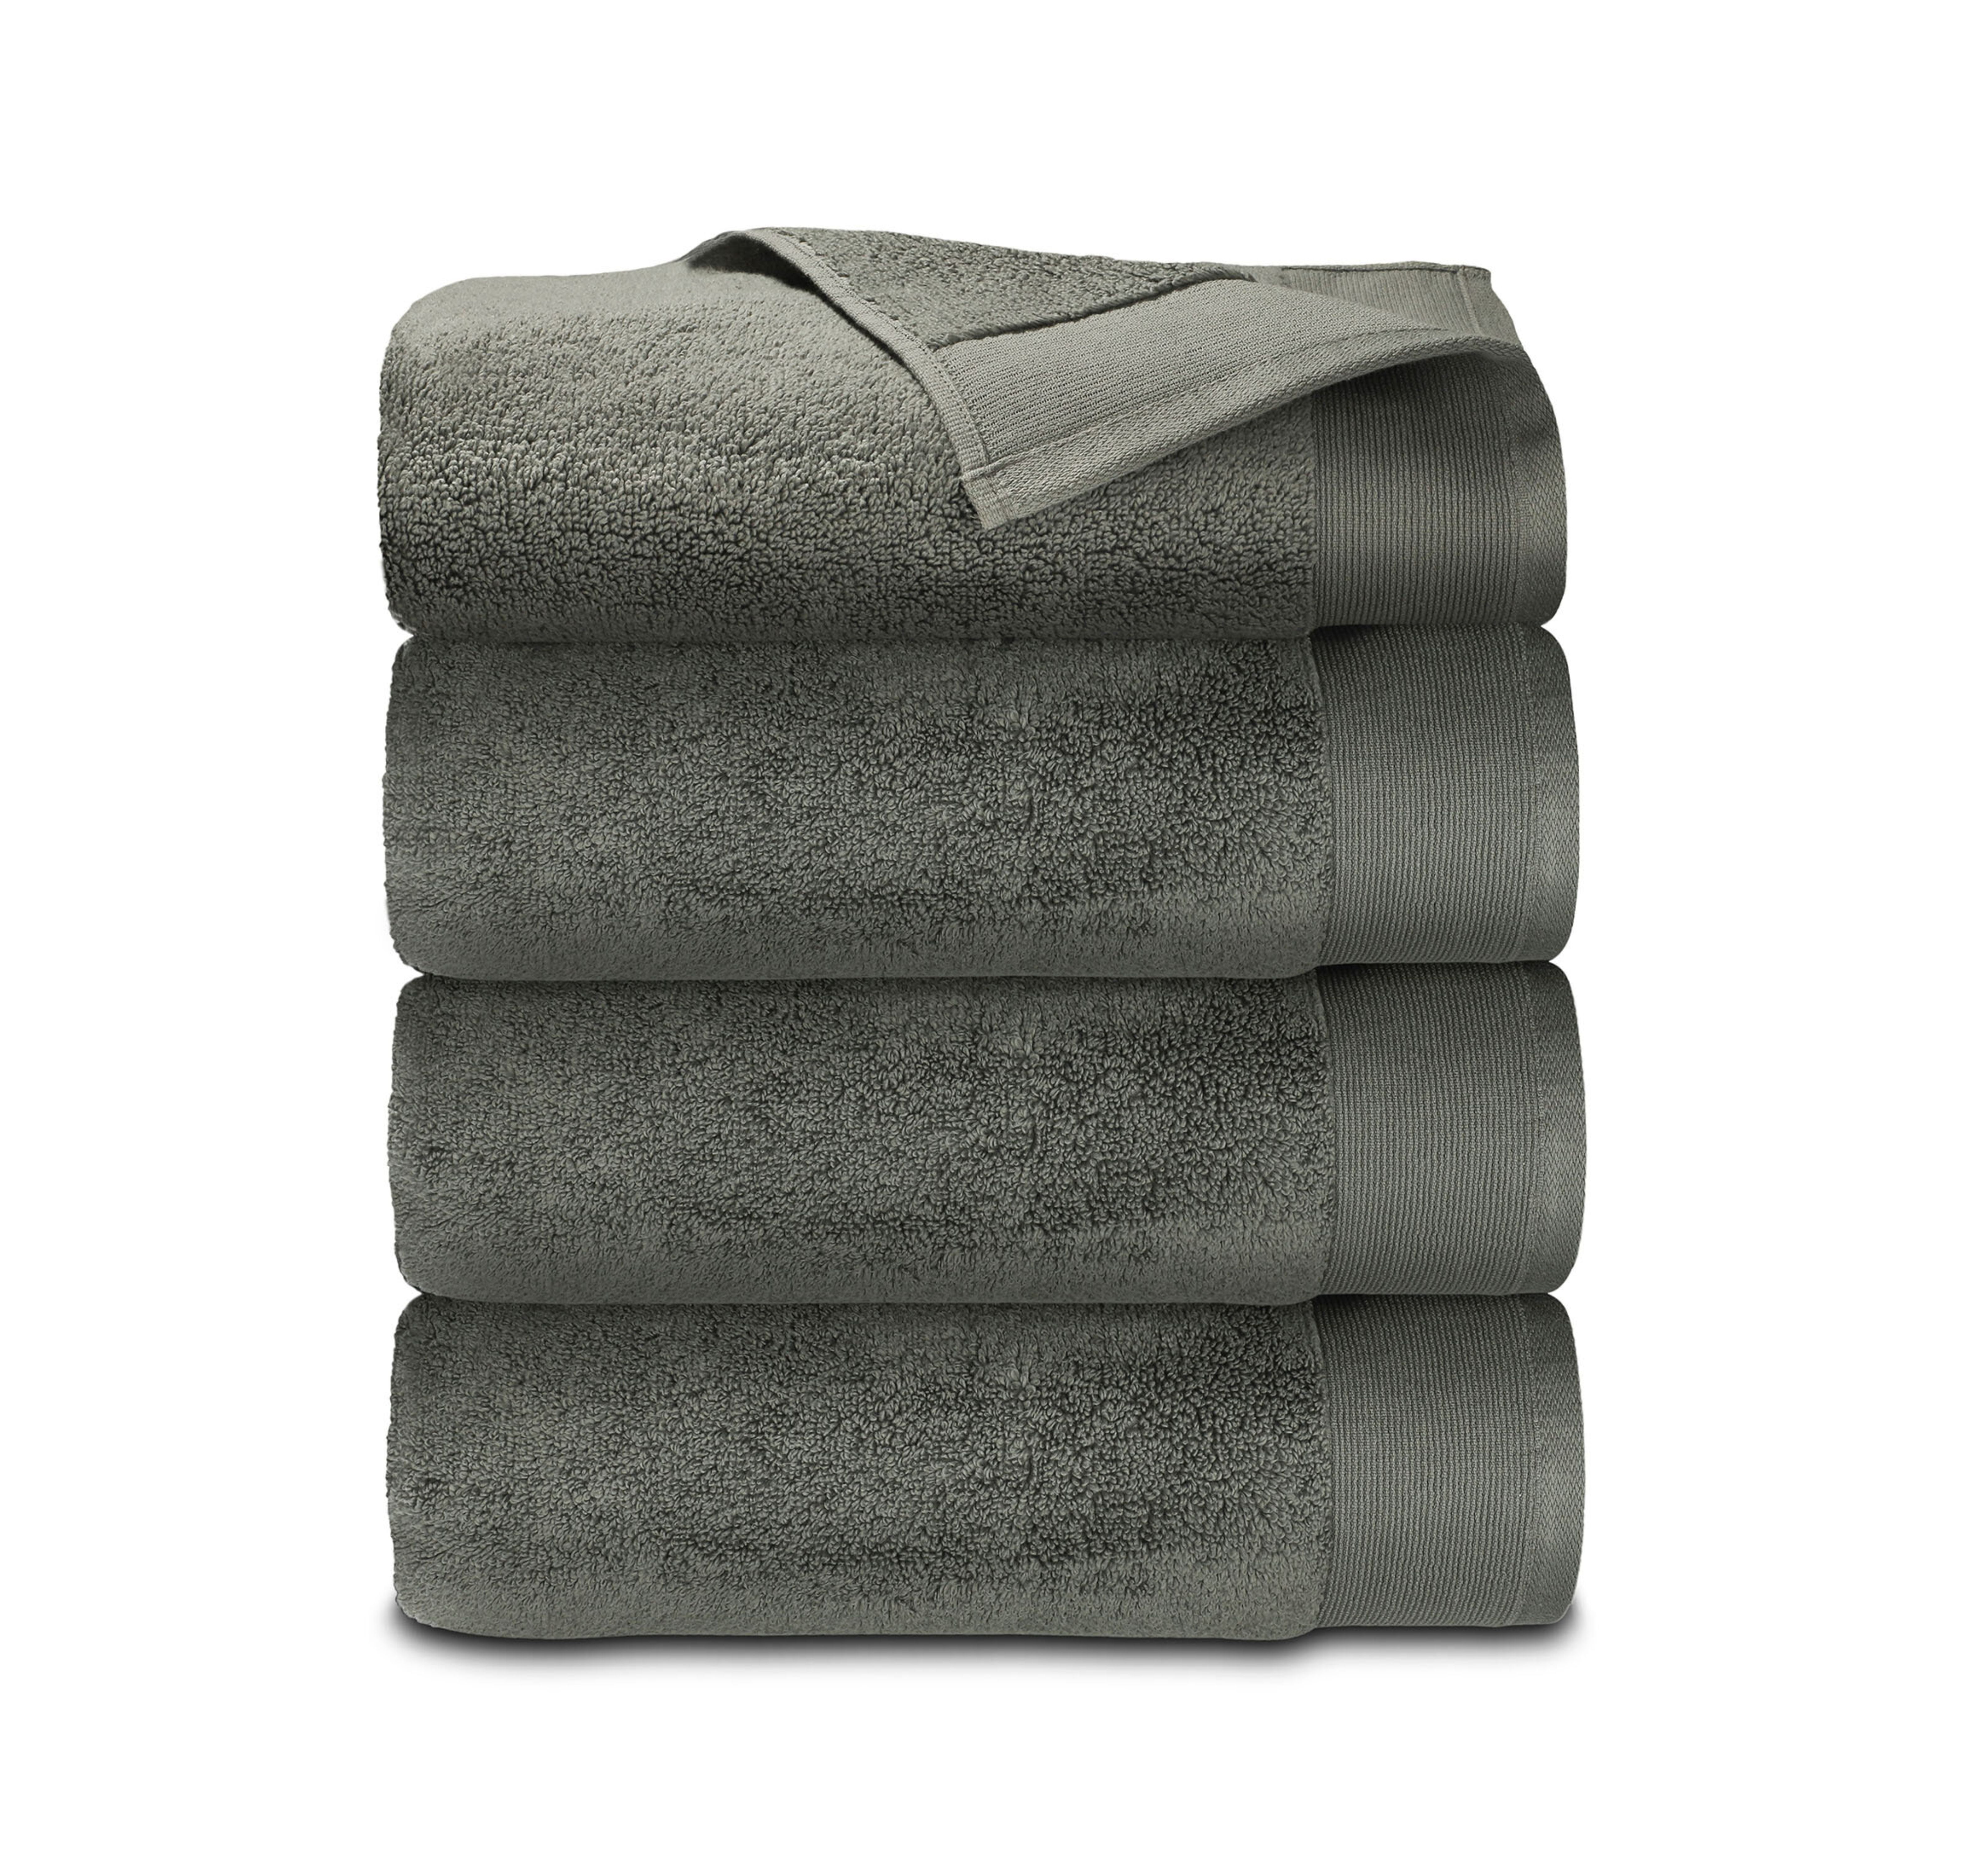 100% Cotton 5-Piece Bath Towel Set - 54 L x 27 W - On Sale - Bed